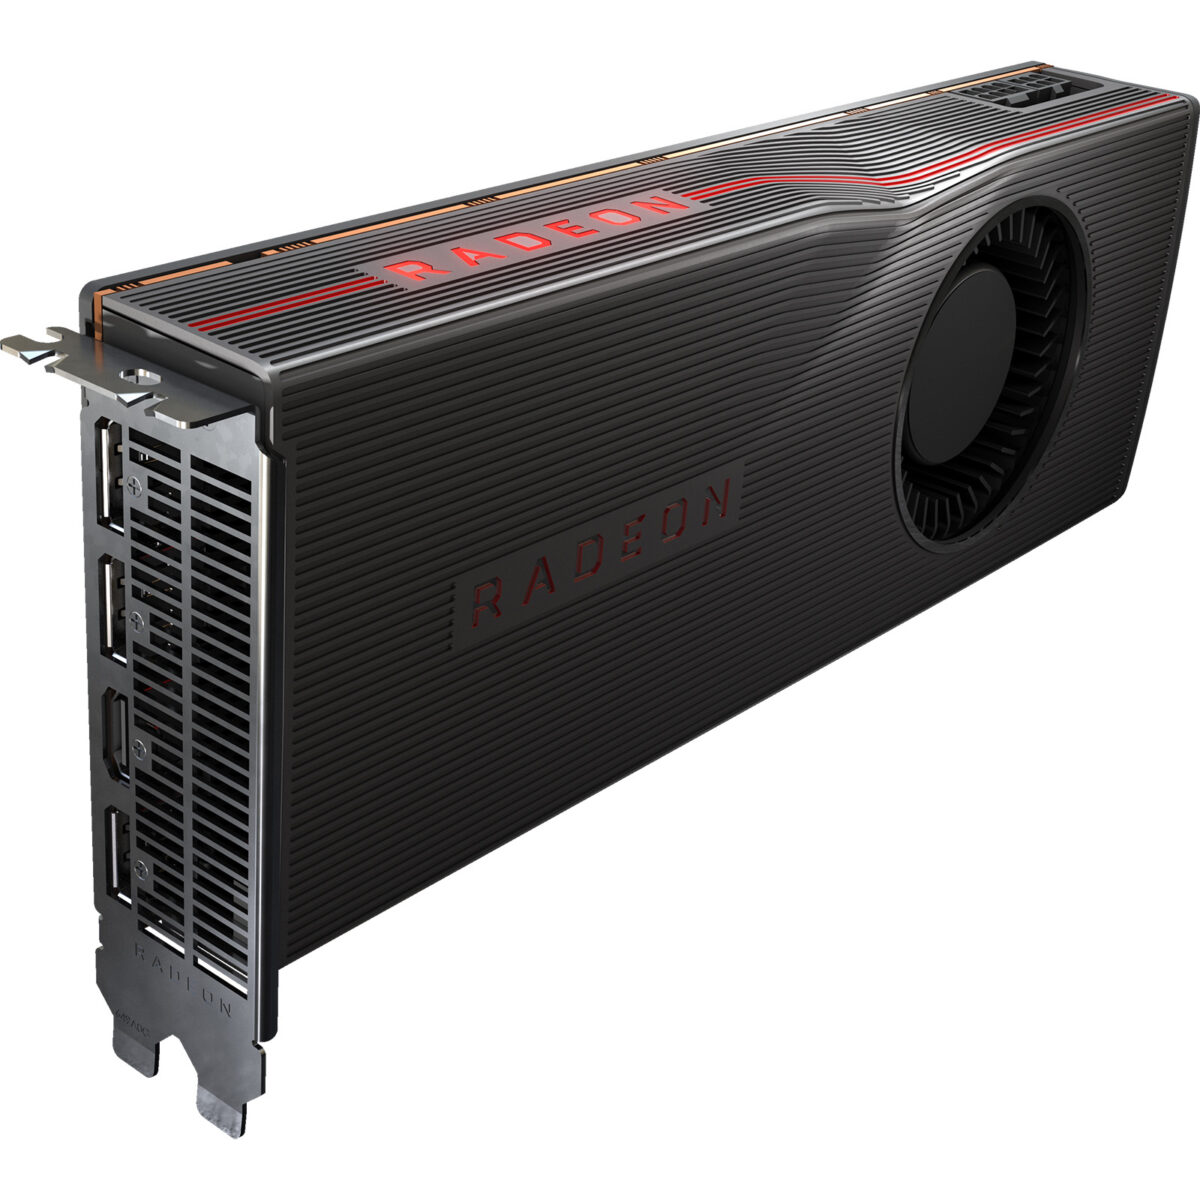 AMD's Radeon RX 5700 & RX 5700 XT At 1080p, 1440p & Ultrawide – Techgage